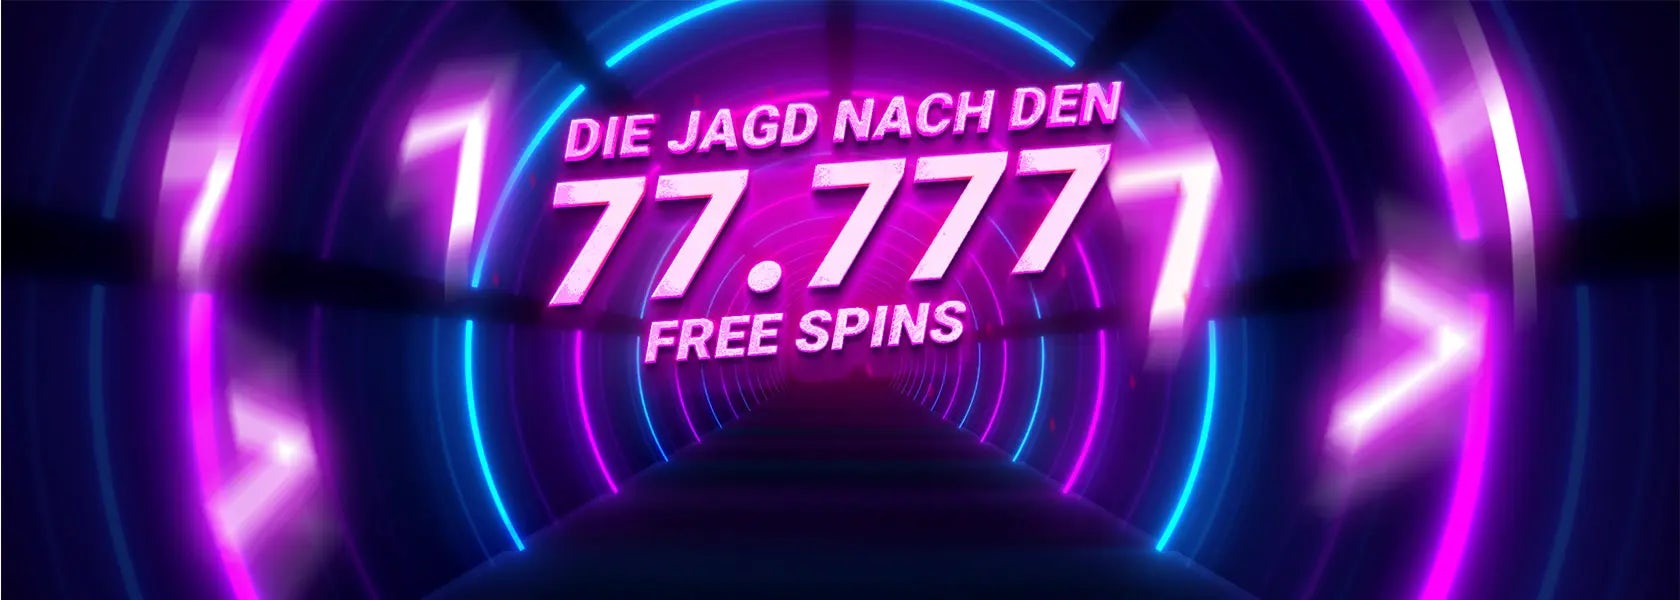 jagd-nach-den-77777-free-spins-13042024